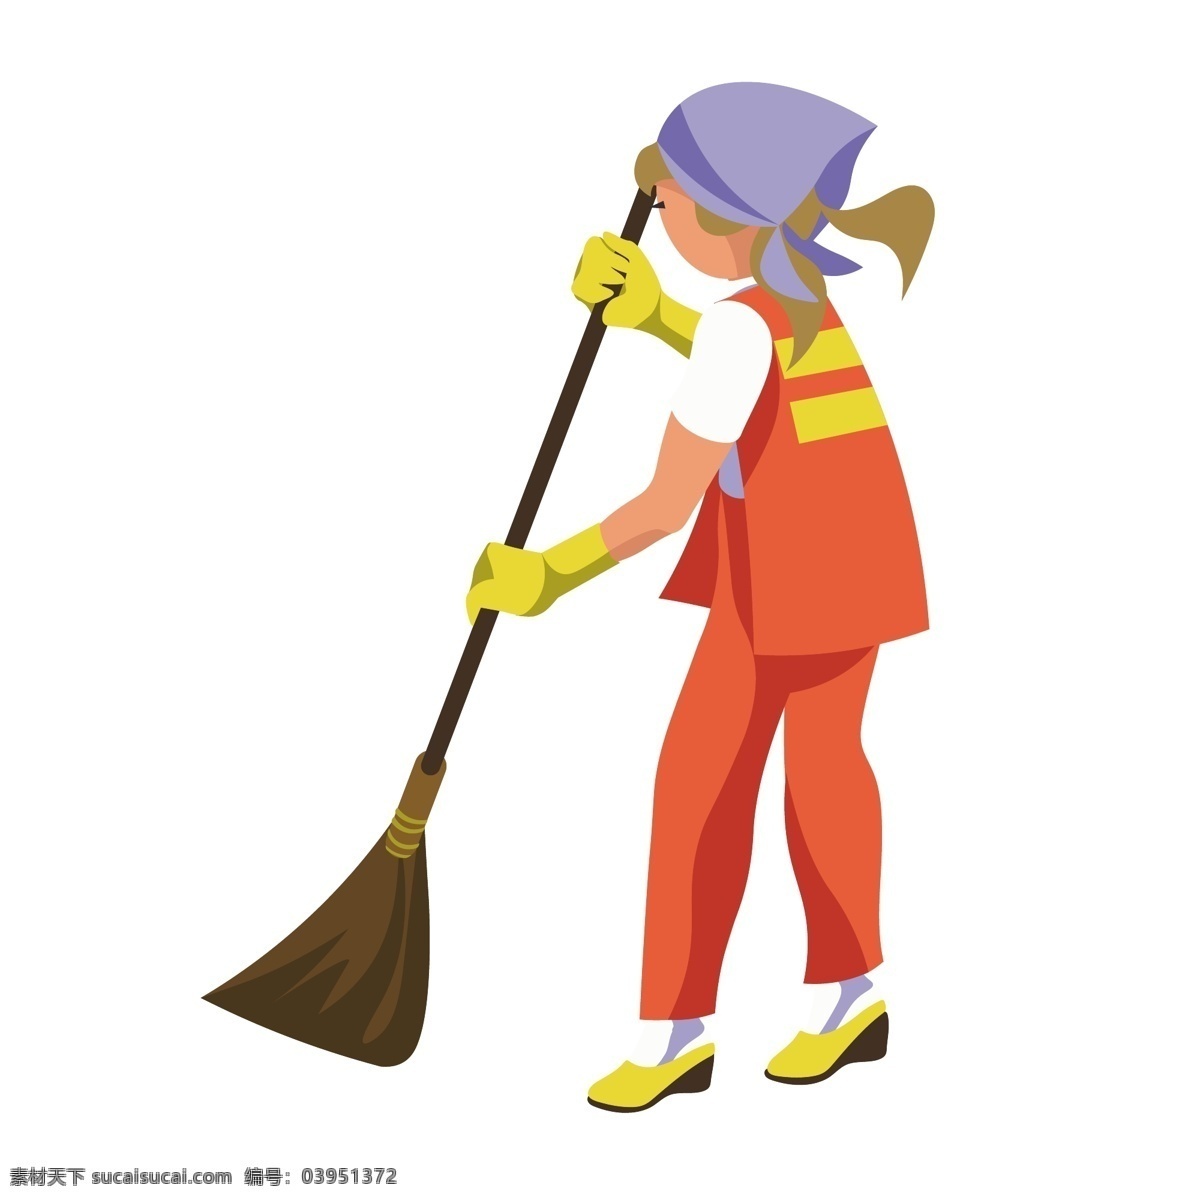 卡通 环卫 工人 矢量 扫地 扫地清洁 城市环卫 环卫工人 城市清洁 扫地的工人 卡通环卫工人